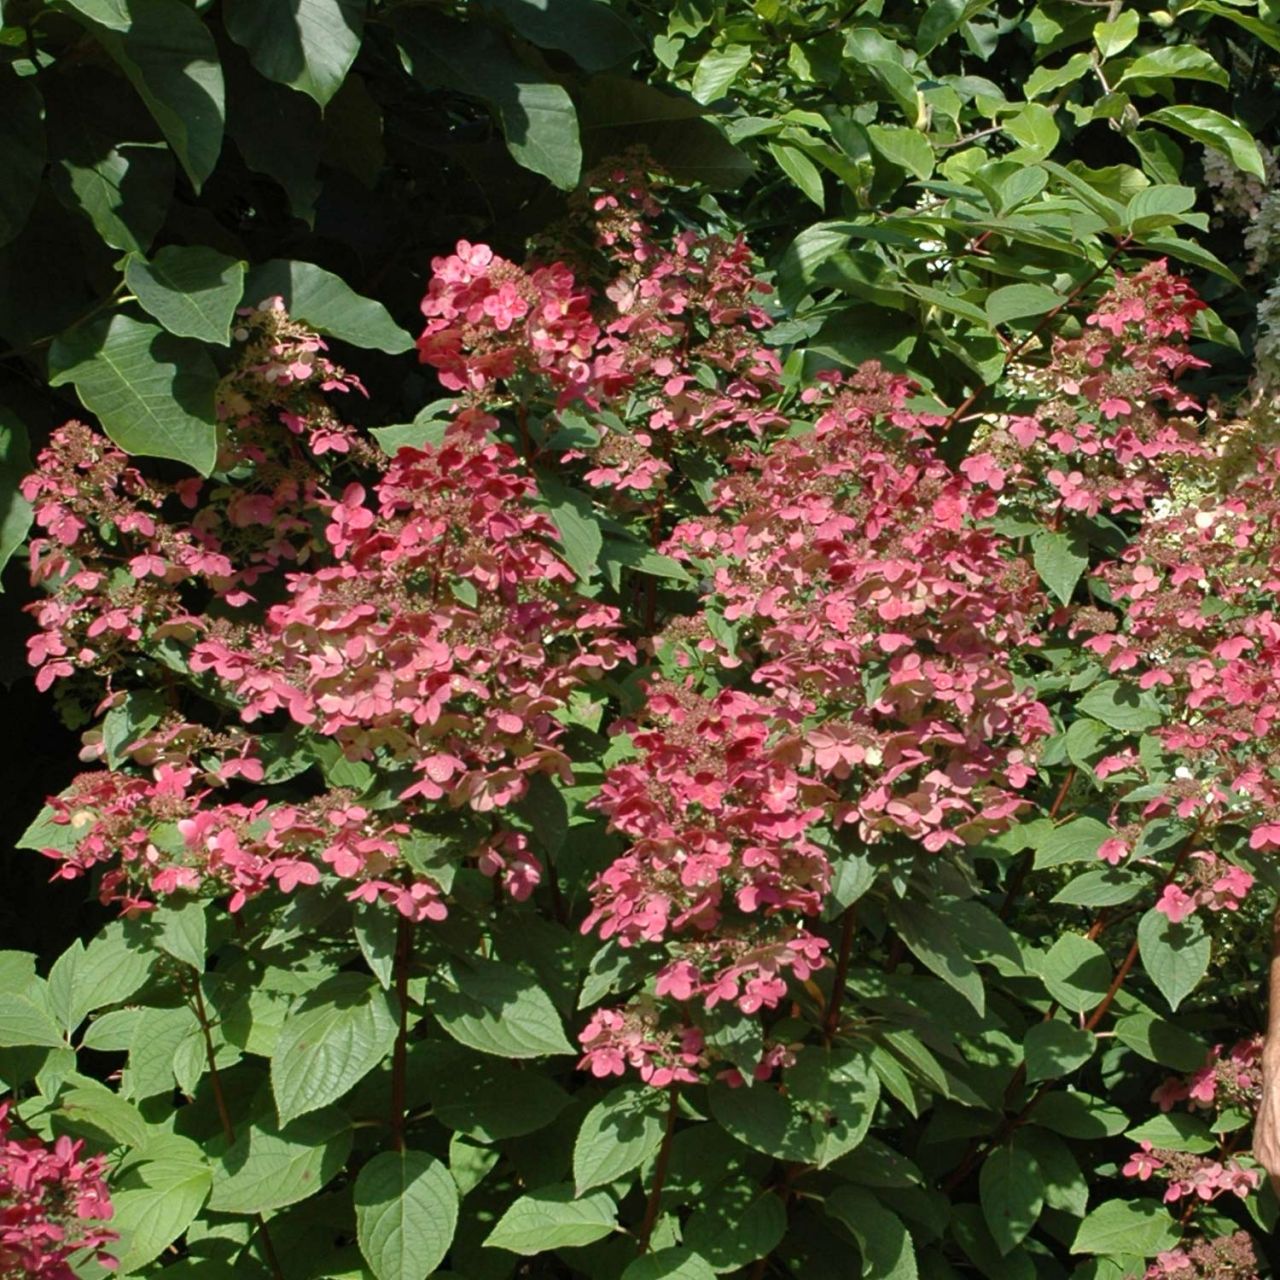 Kategorie <b>Blütensträucher und Ziergehölze </b> - Rispenhortensie 'Wim's Red®' - Hydrangea paniculata 'Wim's Red®'